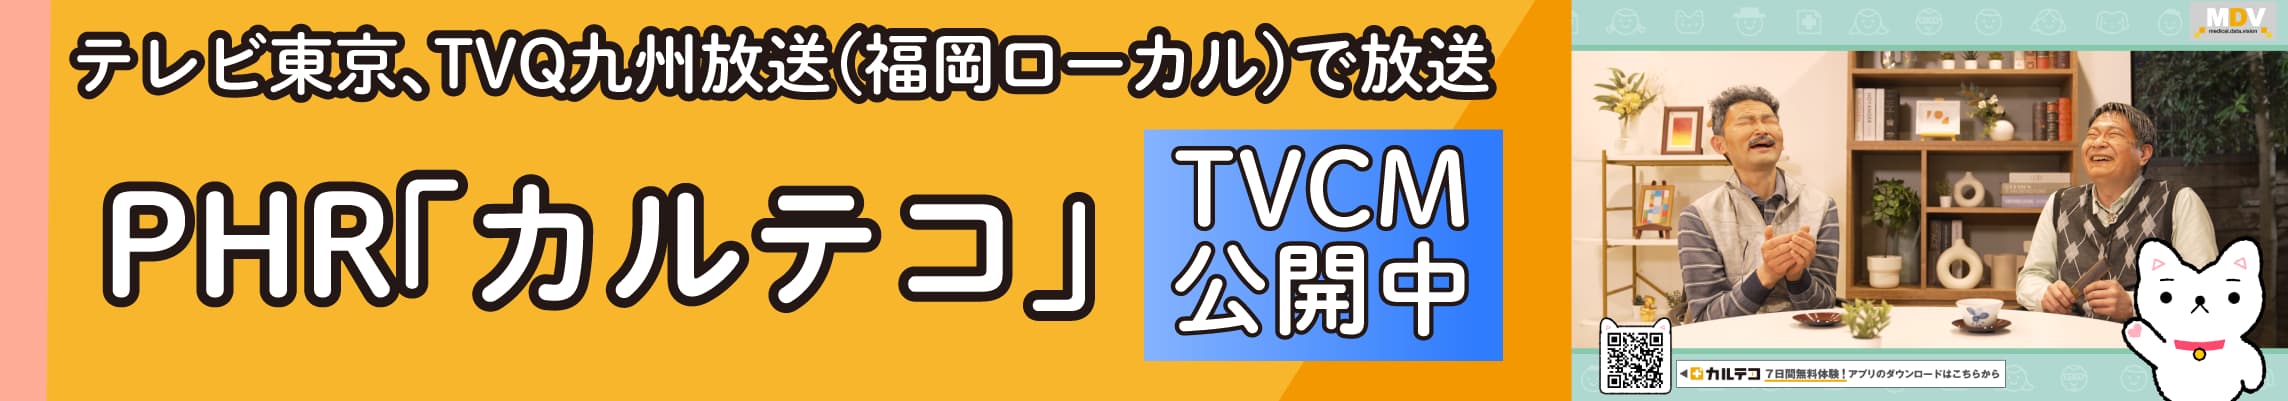 テレビ東京、TVQ九州放送(福岡ローカル)で放送 PHR「カルテコ」 TVCM公開中